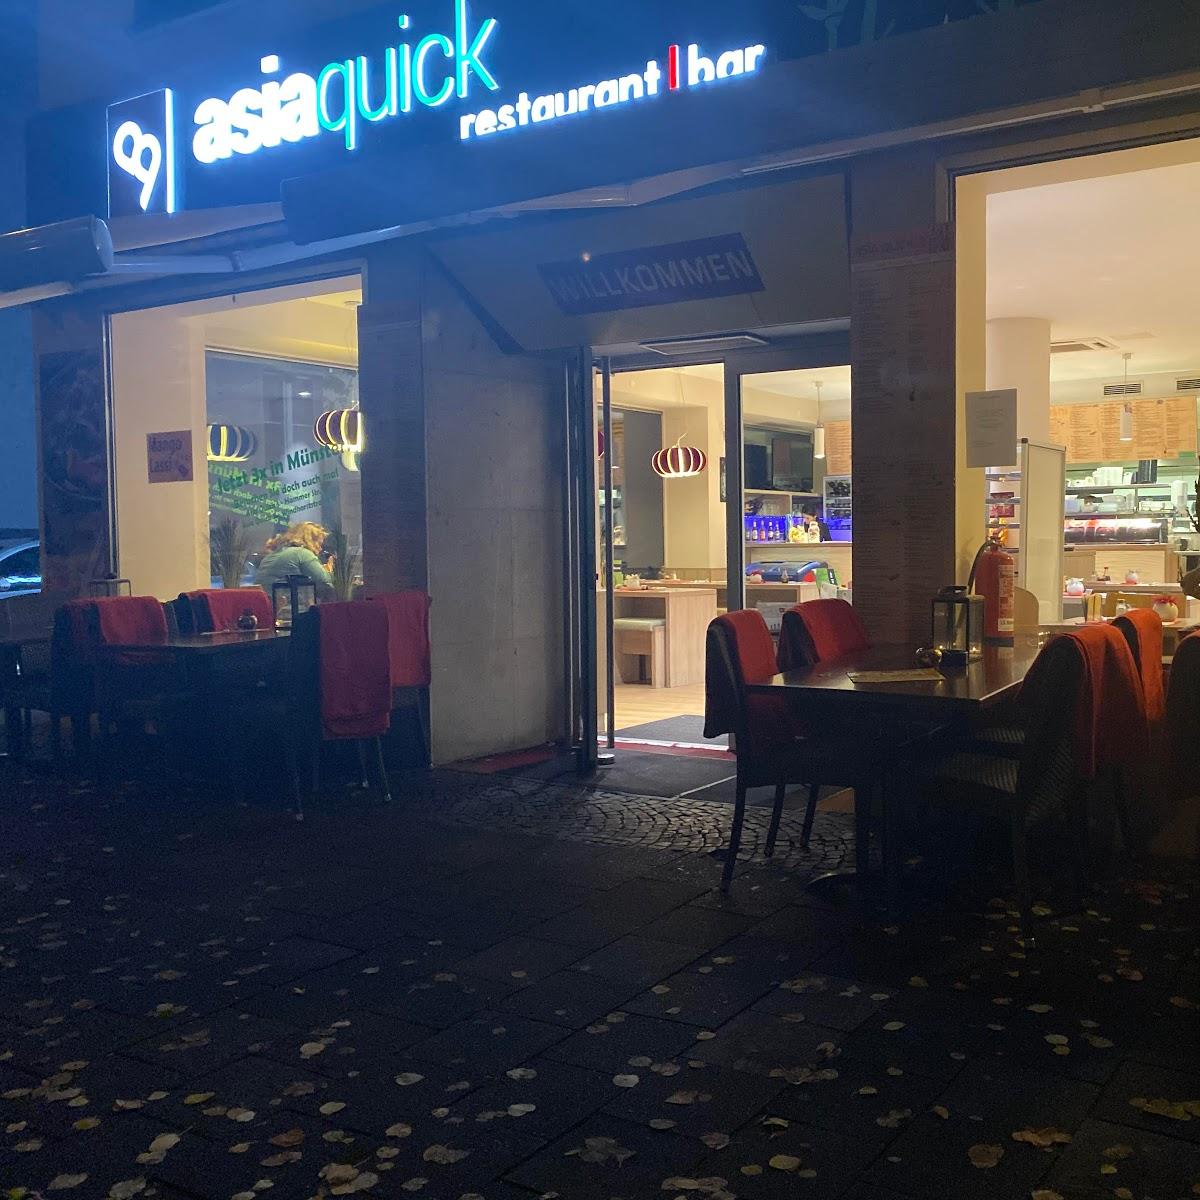 Restaurant "Asia Quick II" in Münster